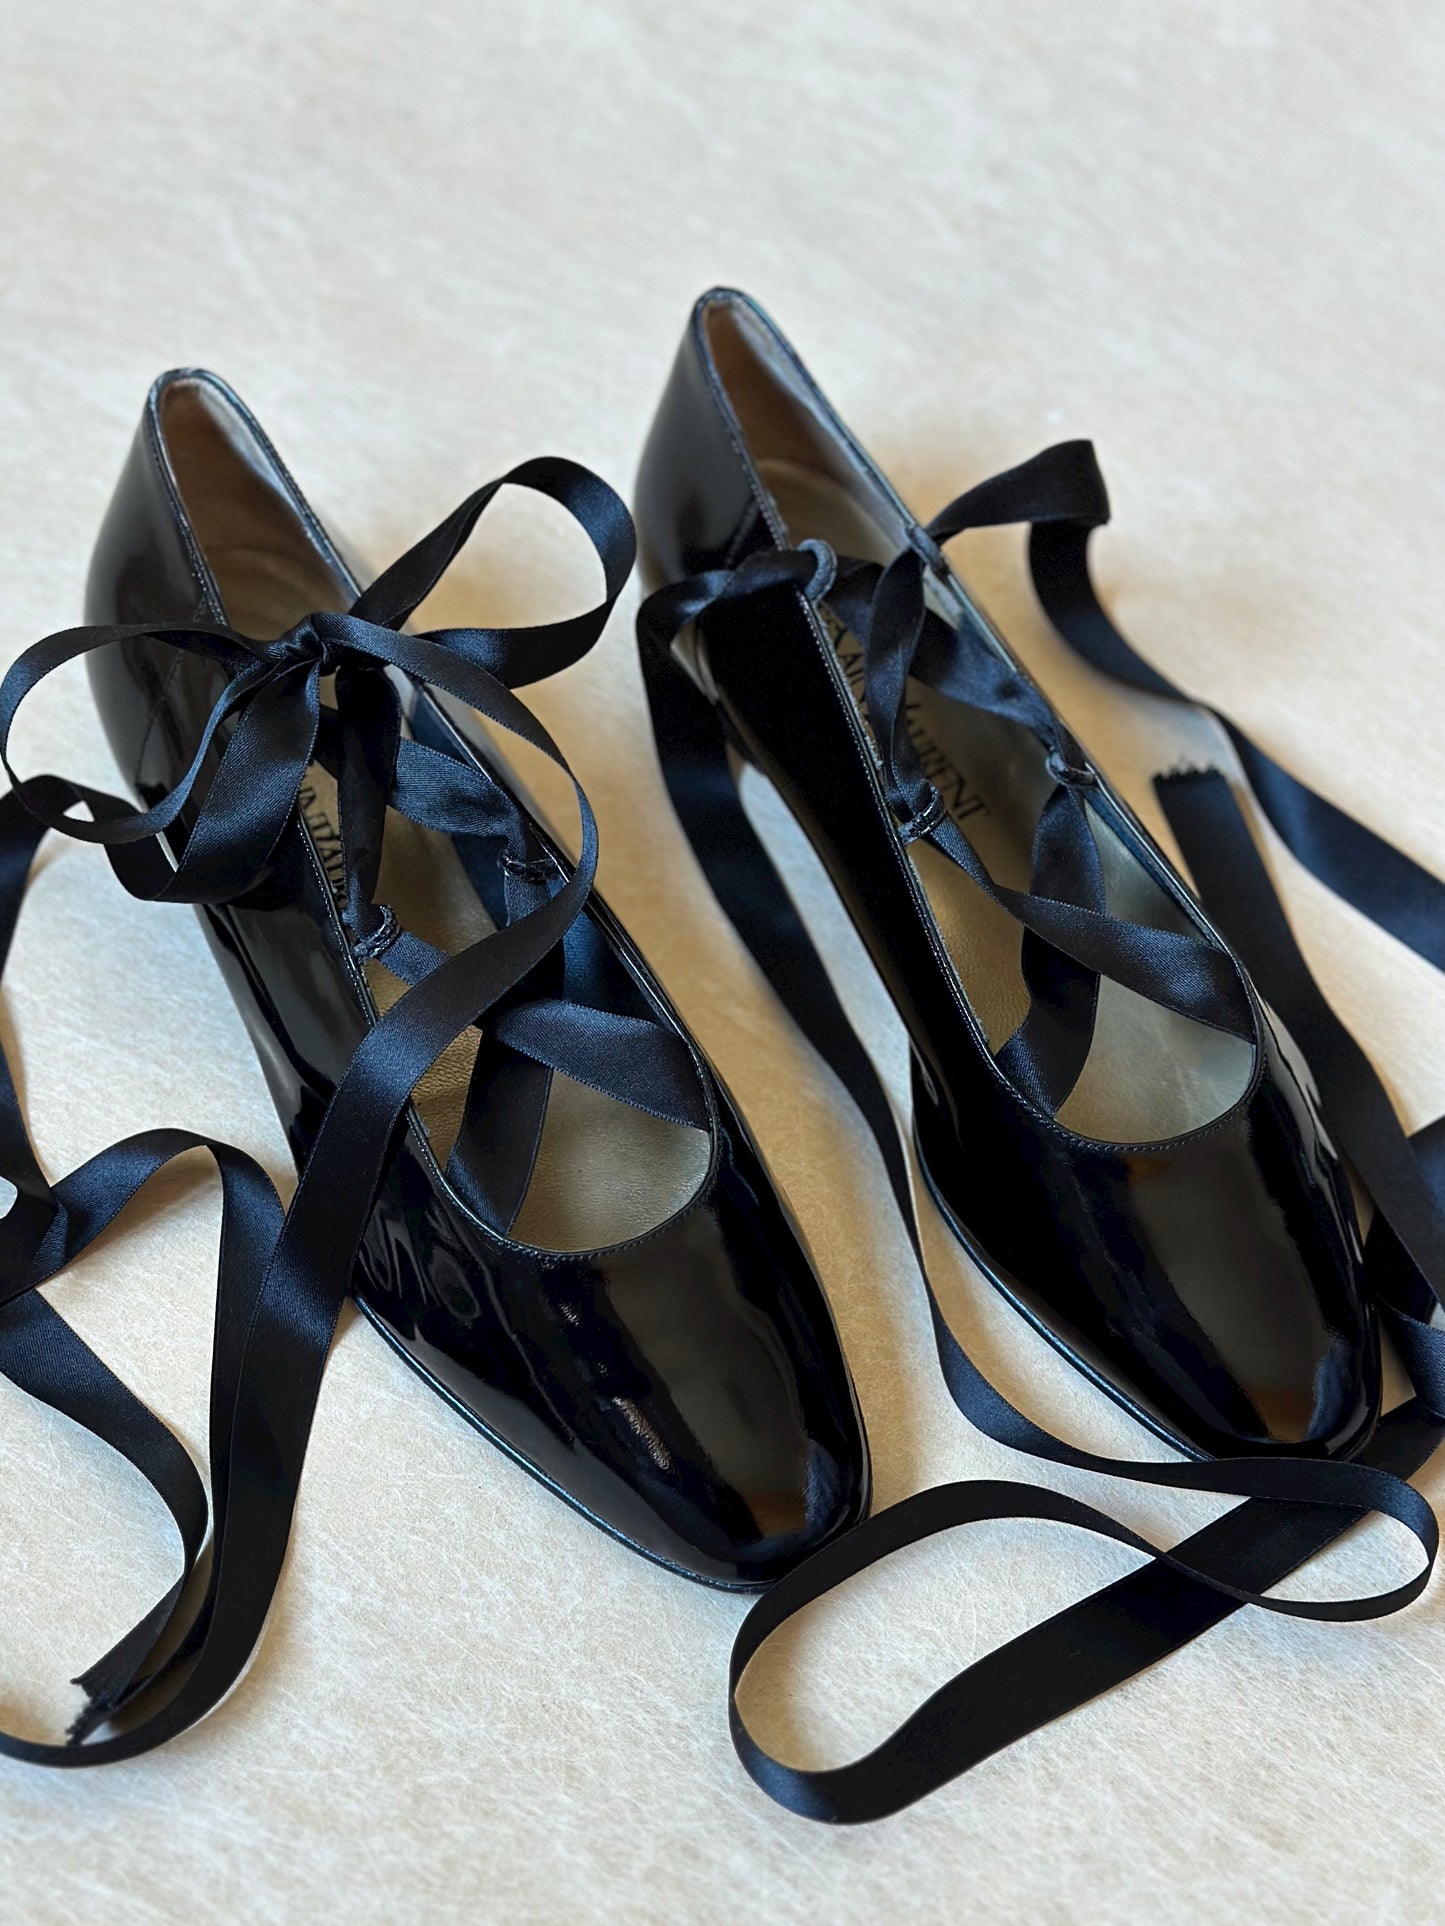 Vintage Yves Saint Laurent Patent Leather Ballet Flats